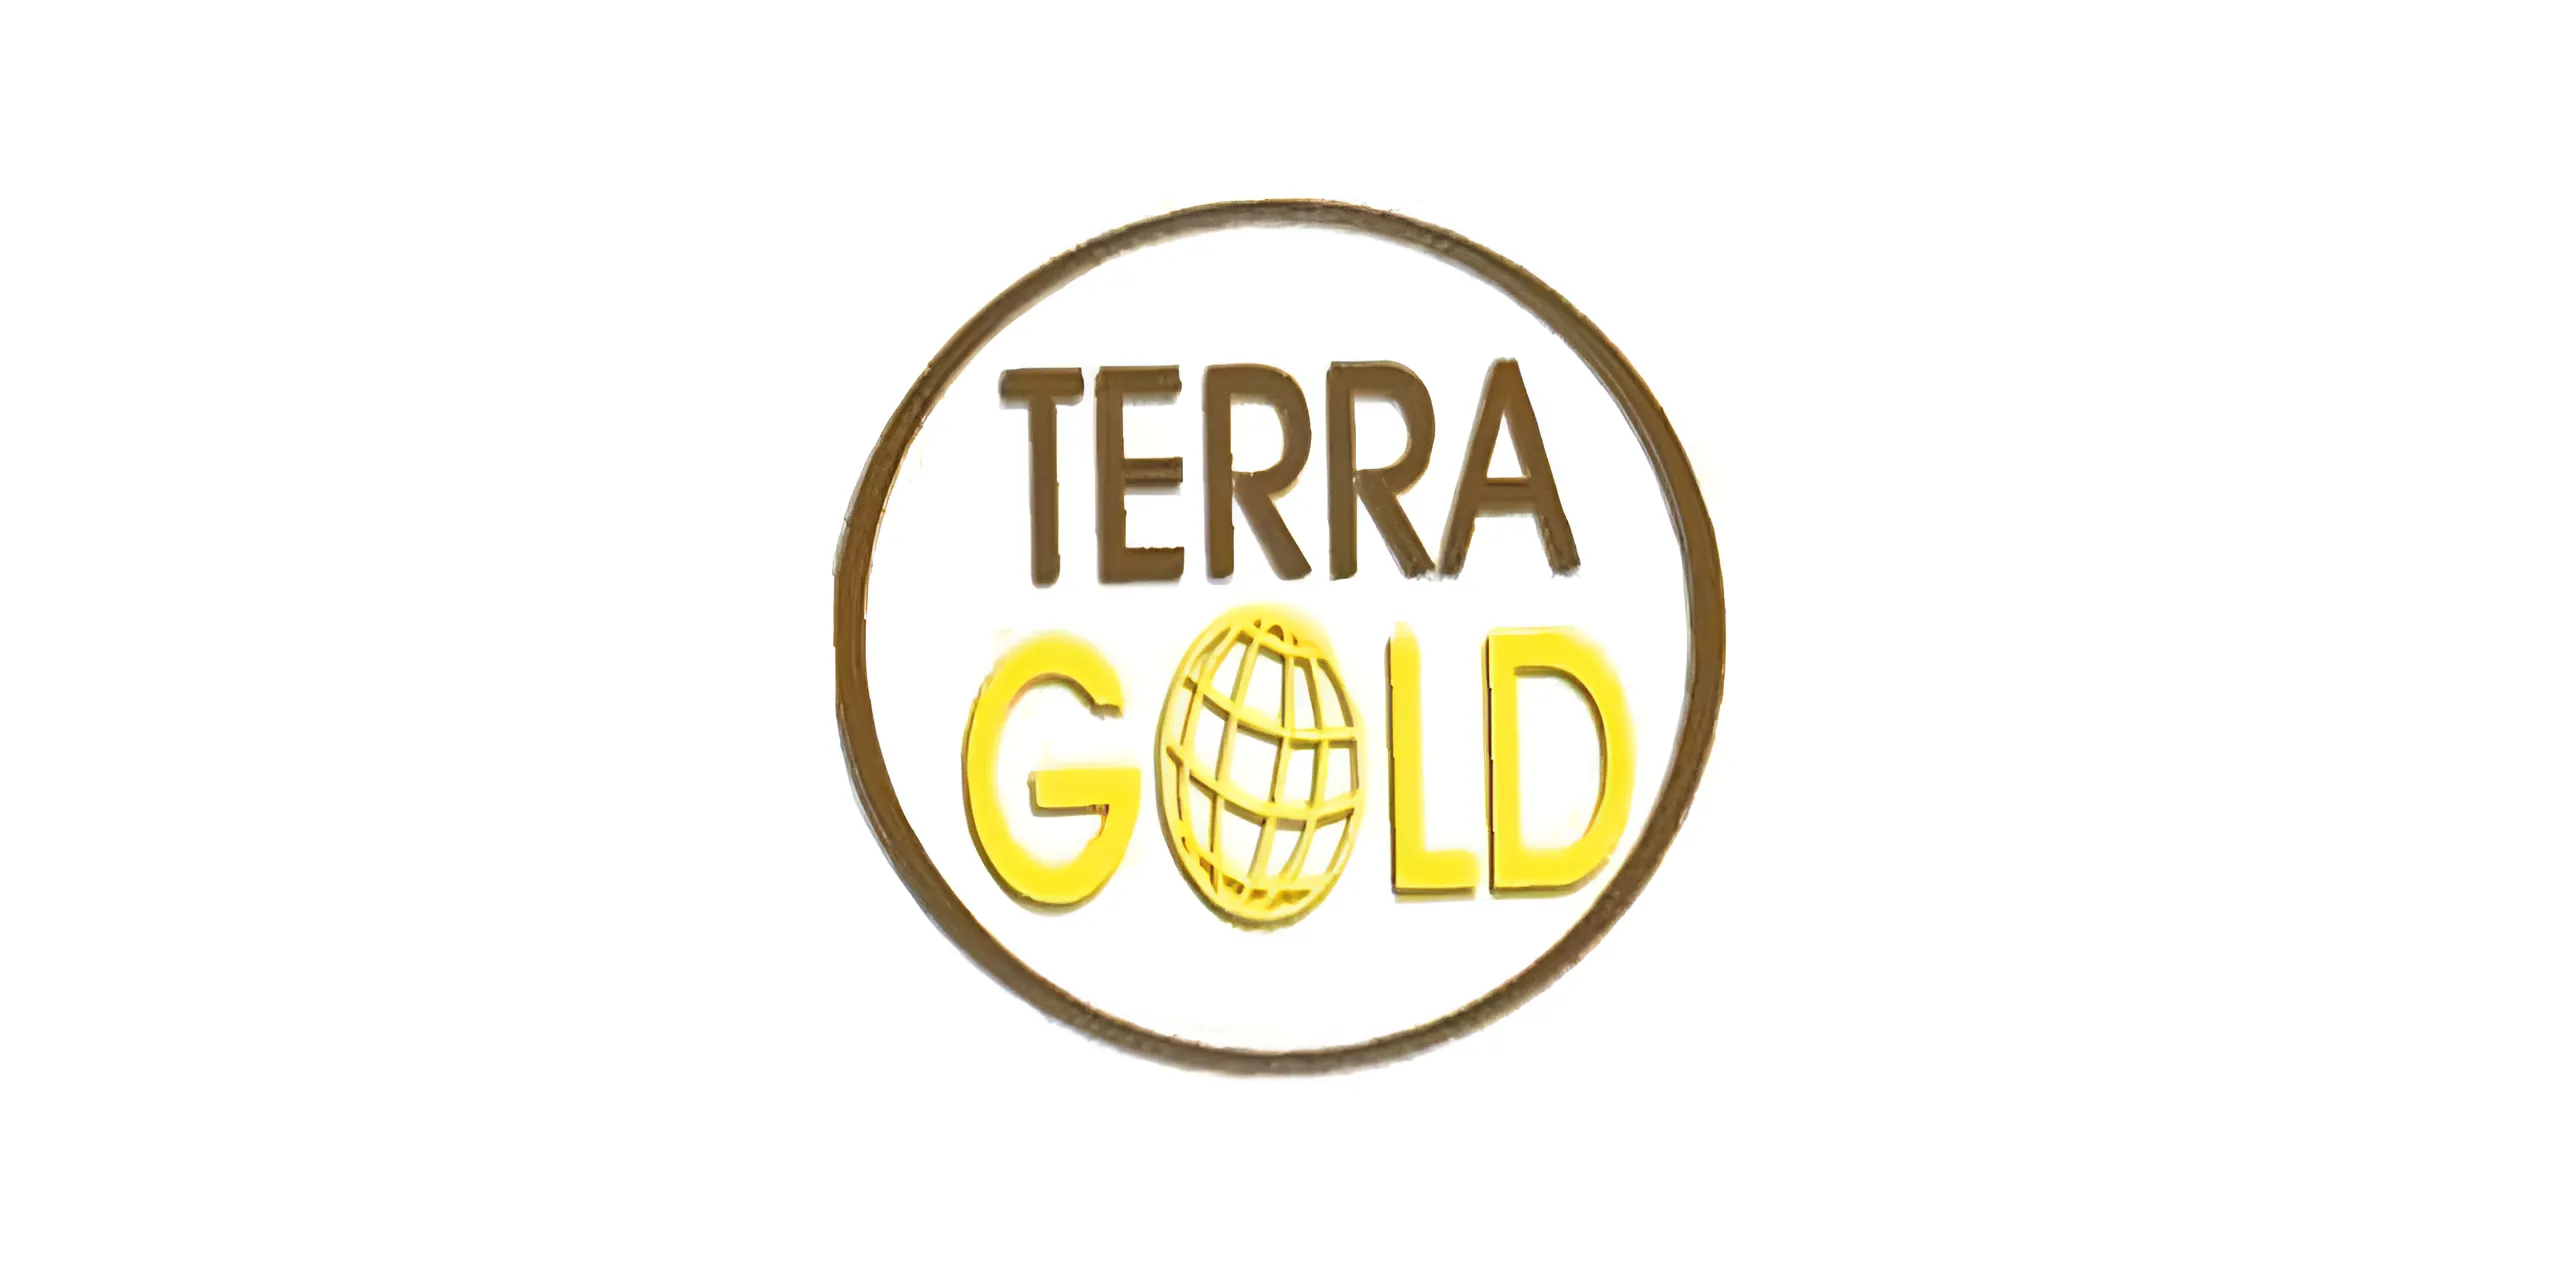 TERRA GOLD Company's LOGO